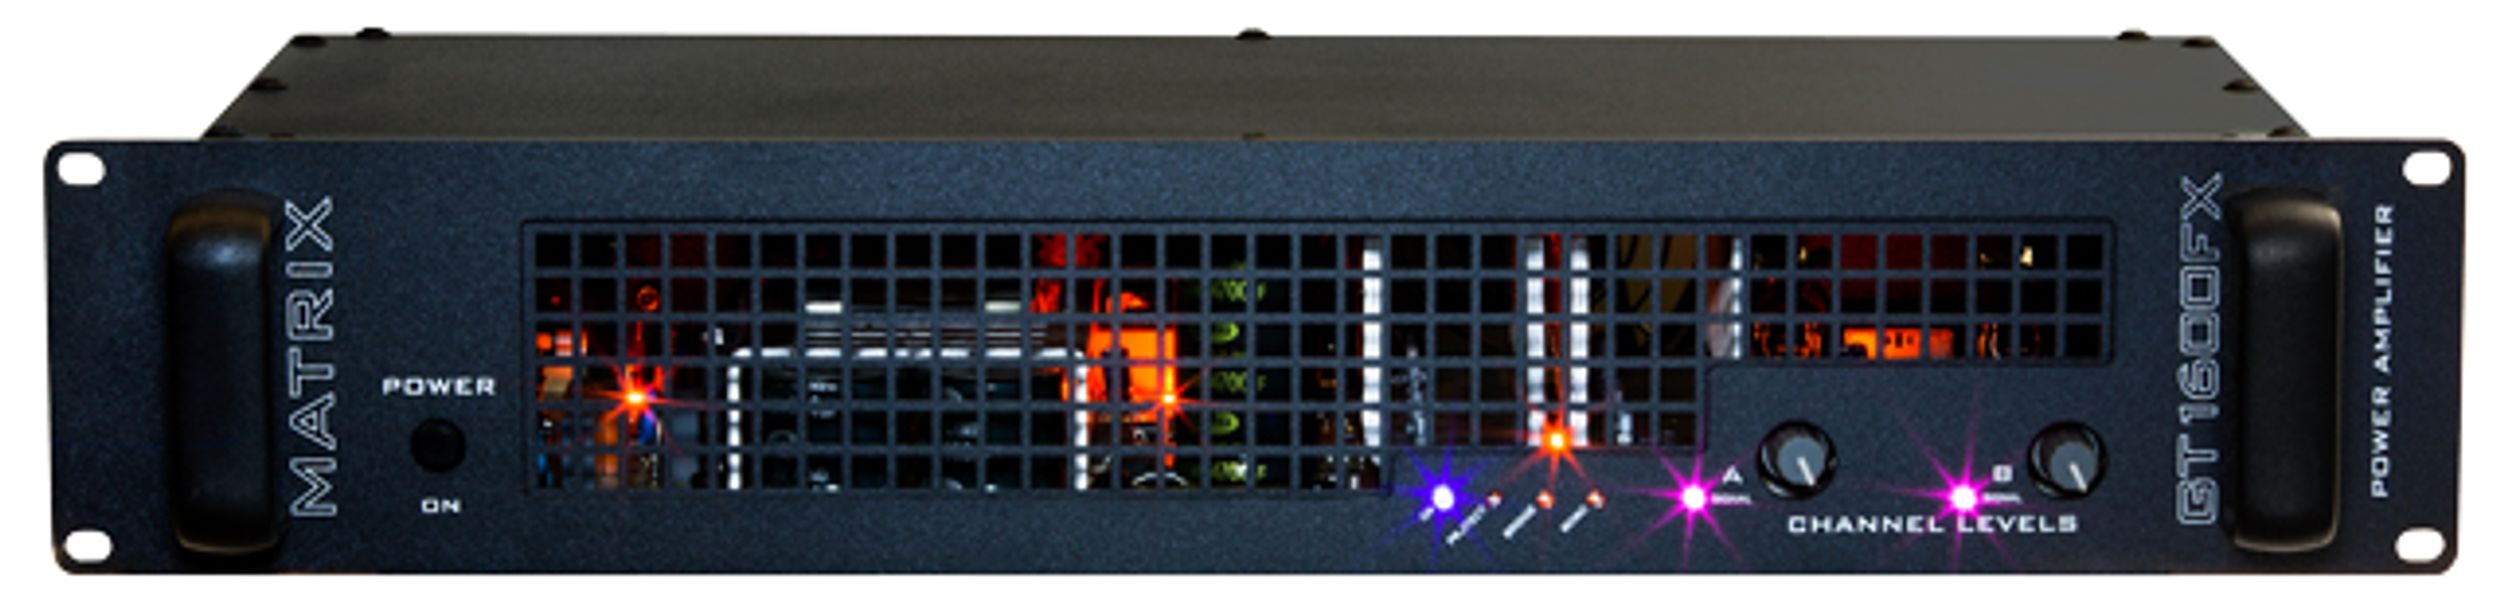 Matrix Amplification Announces New GT1600FX Power Amp